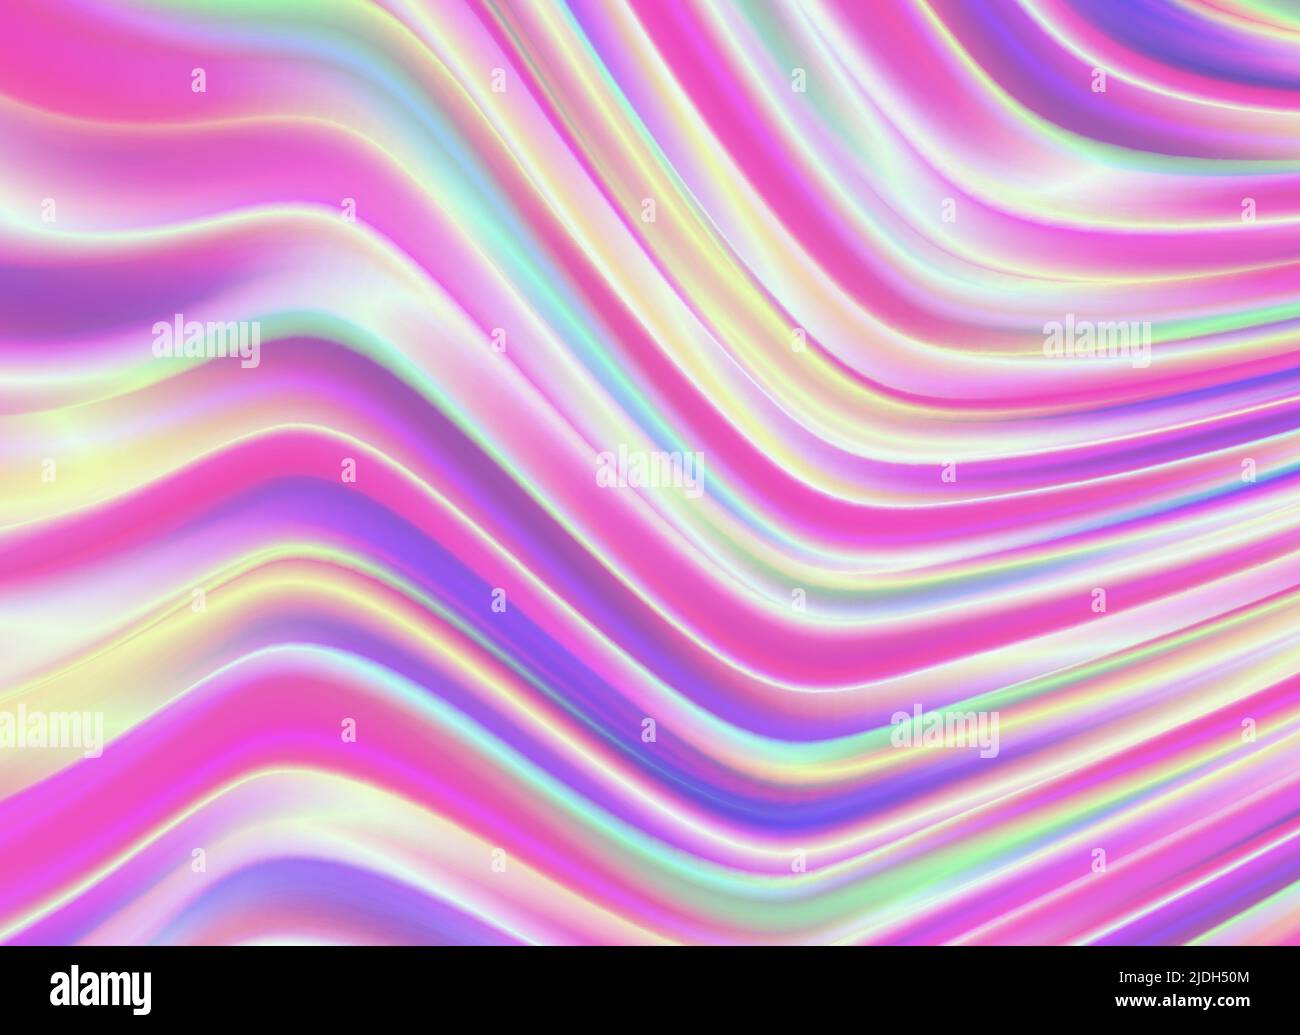 Hintergrund mit bunten chromatischen Wellen in rosa, Hologramm-Folie Muster Stock Vektor